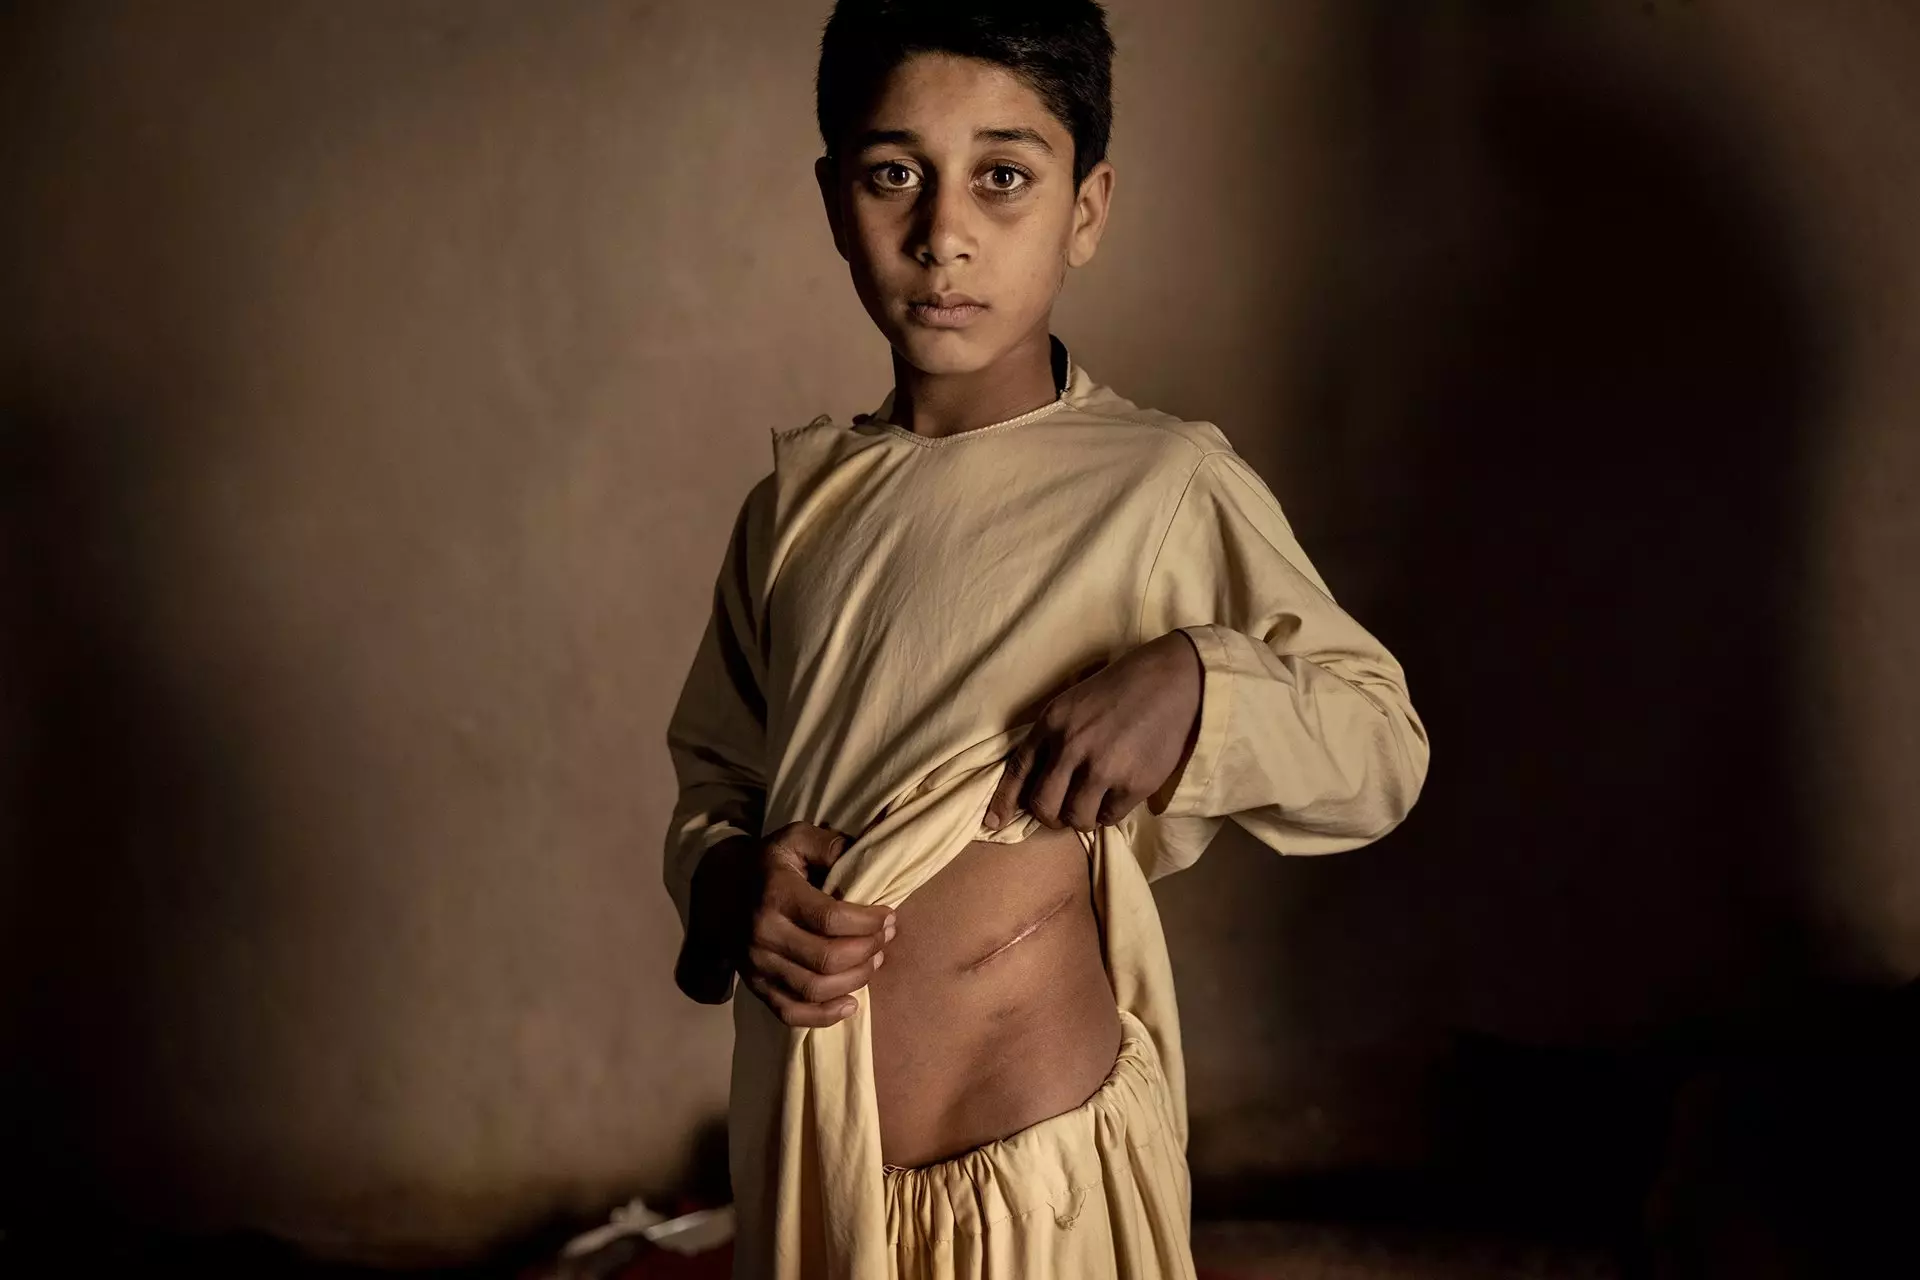 Menino mostra cicatriz Foto de guerra conflito Afeganistão fotojornalismo World Press Photo 